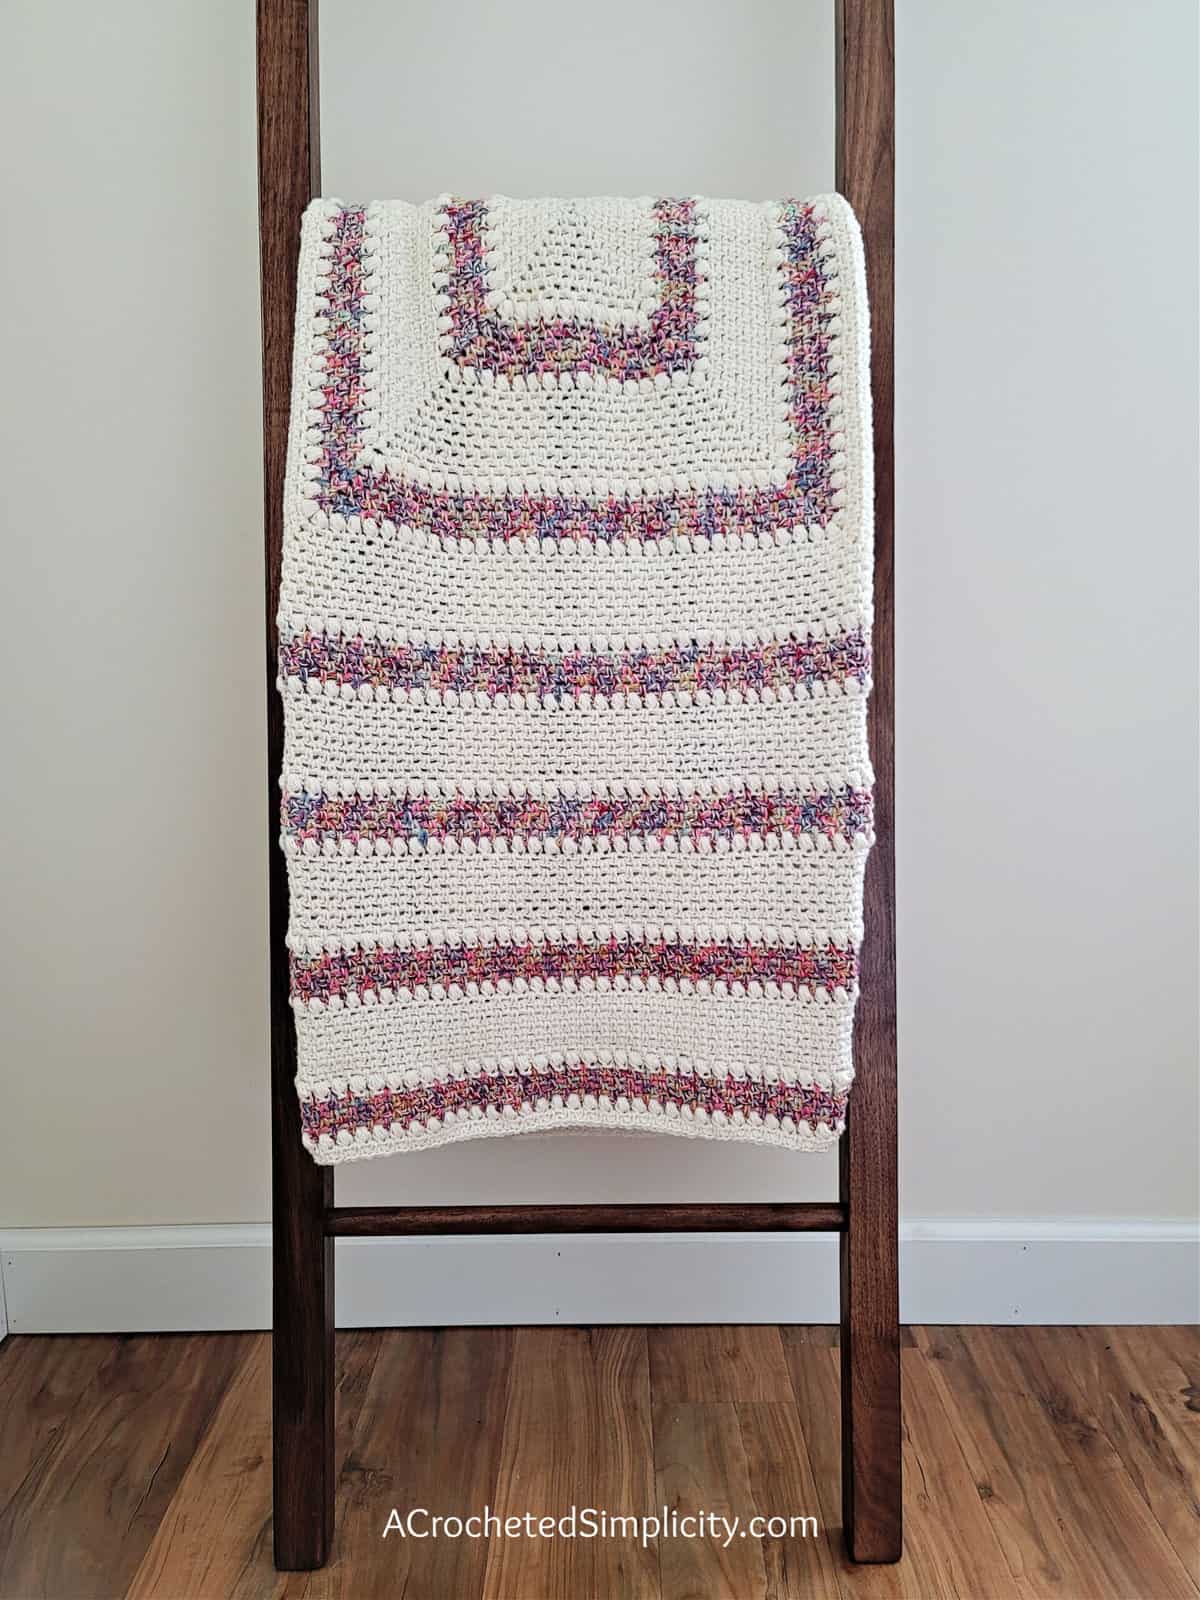 Free Crochet Blanket Pattern - Elayna's Afghan by A Crocheted Simplicity #freecrochetpattern #freecrochetblanketpattern #crochetlapghanpattern #crochetblanketpattern #crochet #crochetlapghan #crochetafghan #crochetpuffstitch #crochetlinenstitch